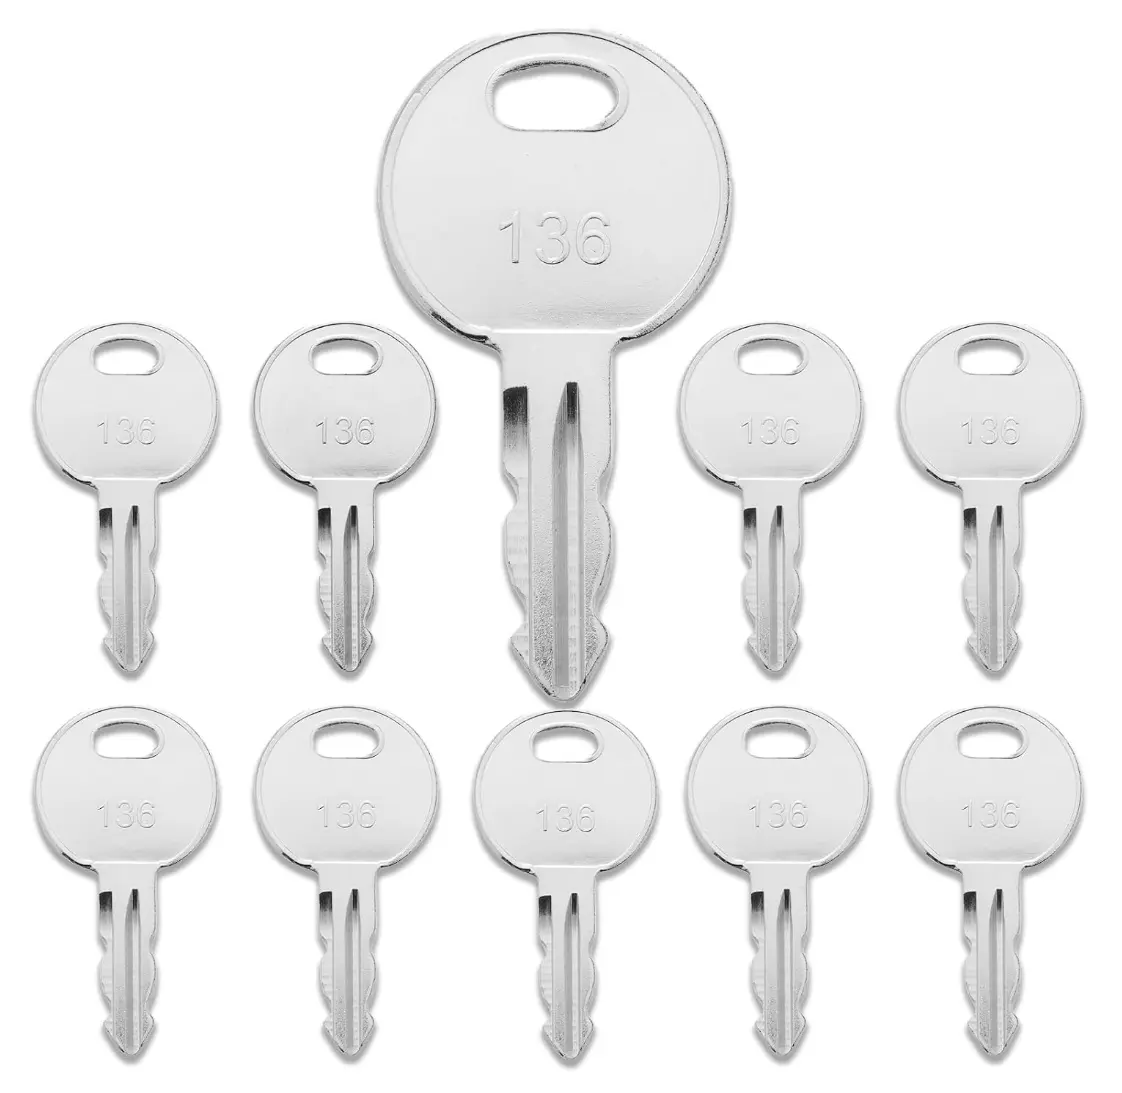 1051 مفتاح إشعال المعدات يناسب مفاتيح الثوايتس السلبية، بديلات T104633 ومفتاح التبديل 1051